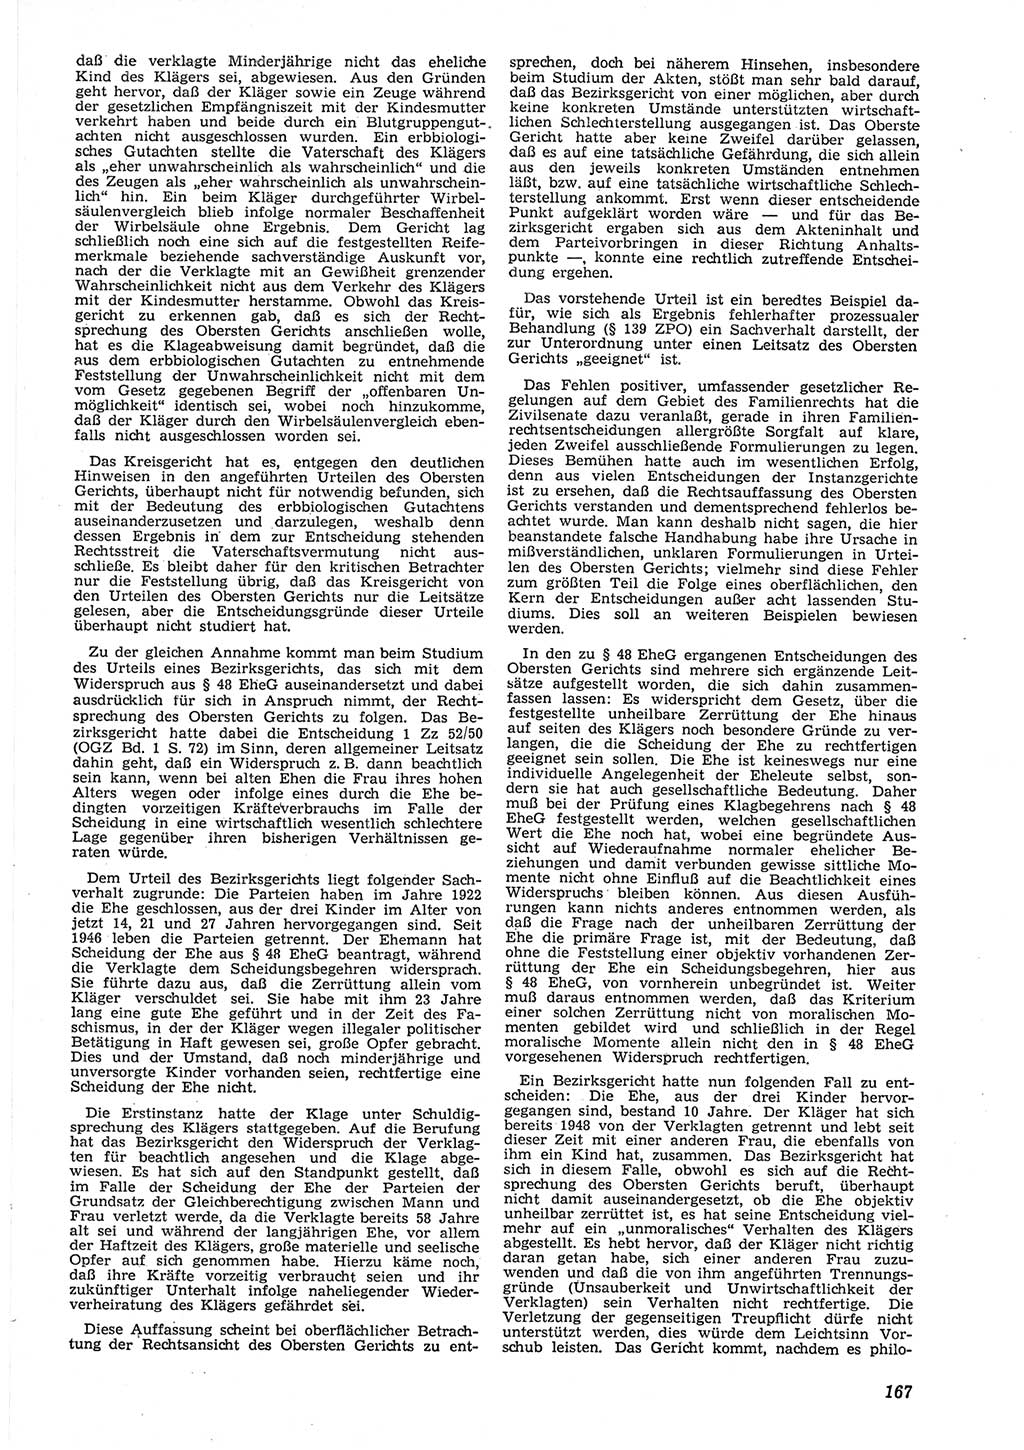 Neue Justiz (NJ), Zeitschrift für Recht und Rechtswissenschaft [Deutsche Demokratische Republik (DDR)], 8. Jahrgang 1954, Seite 167 (NJ DDR 1954, S. 167)